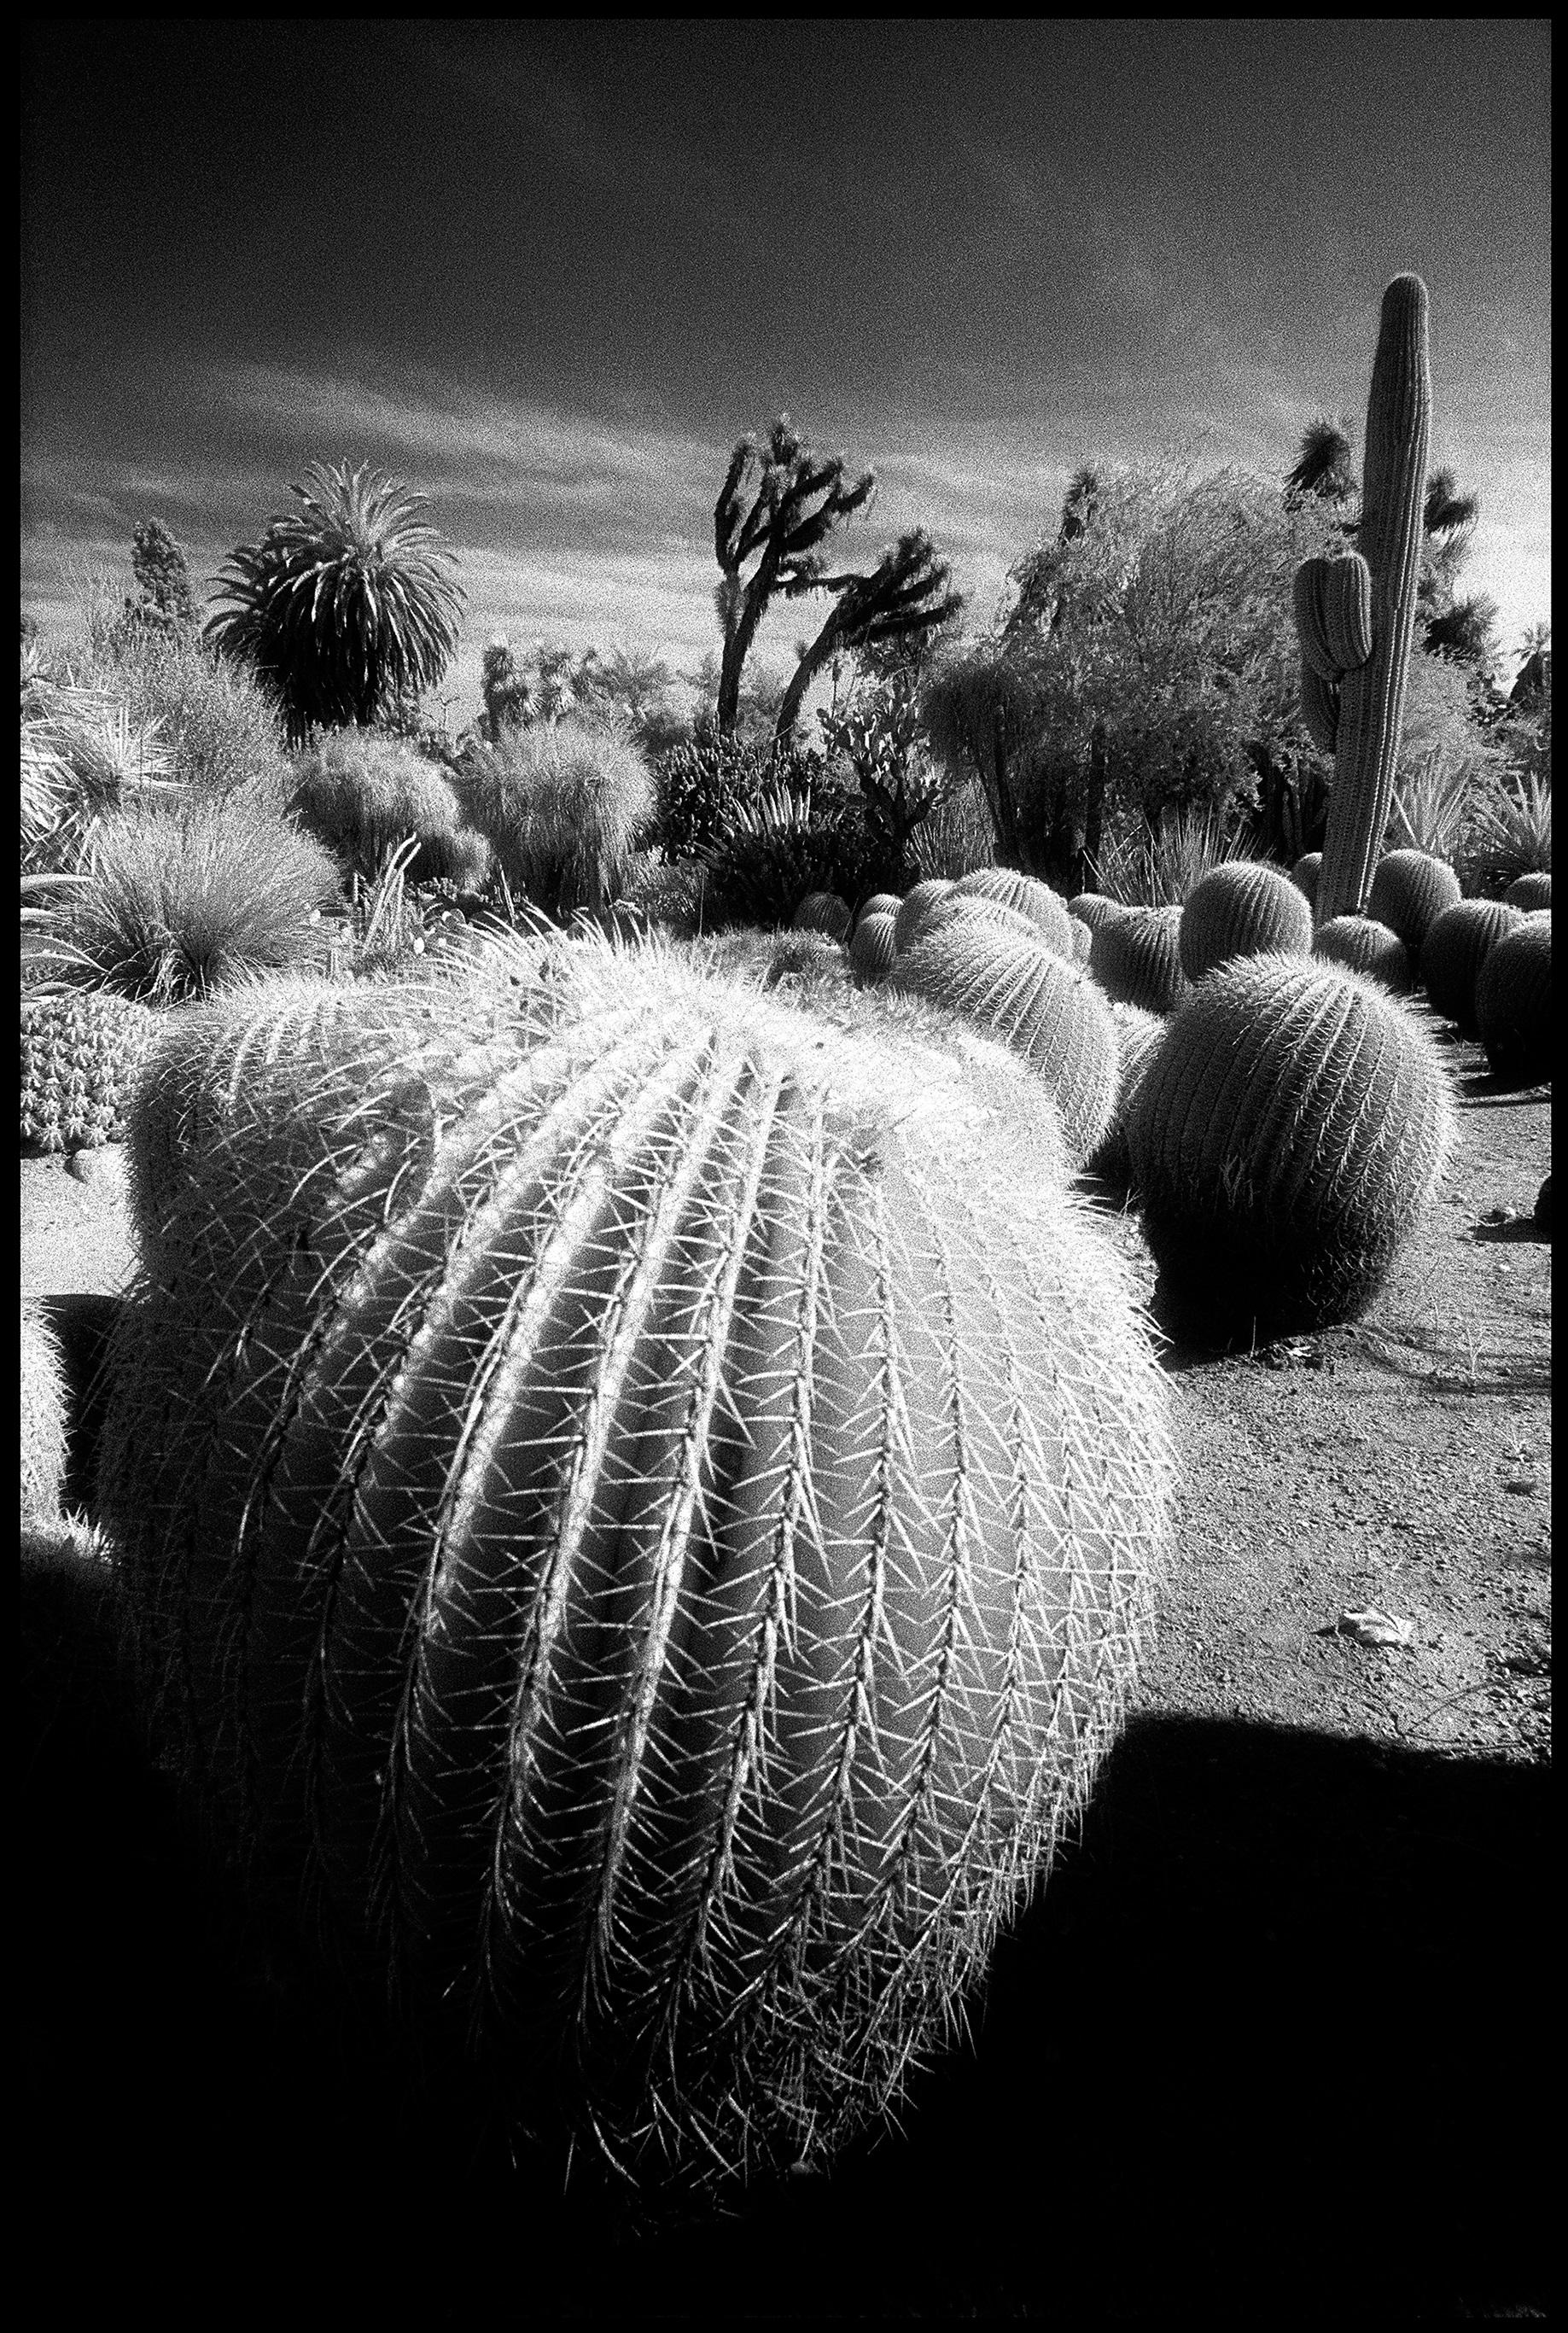 Landscape Photograph Edward Alfano - Cactus Garden at Huntington Gardens - Photographie de paysage surréaliste contemporaine 